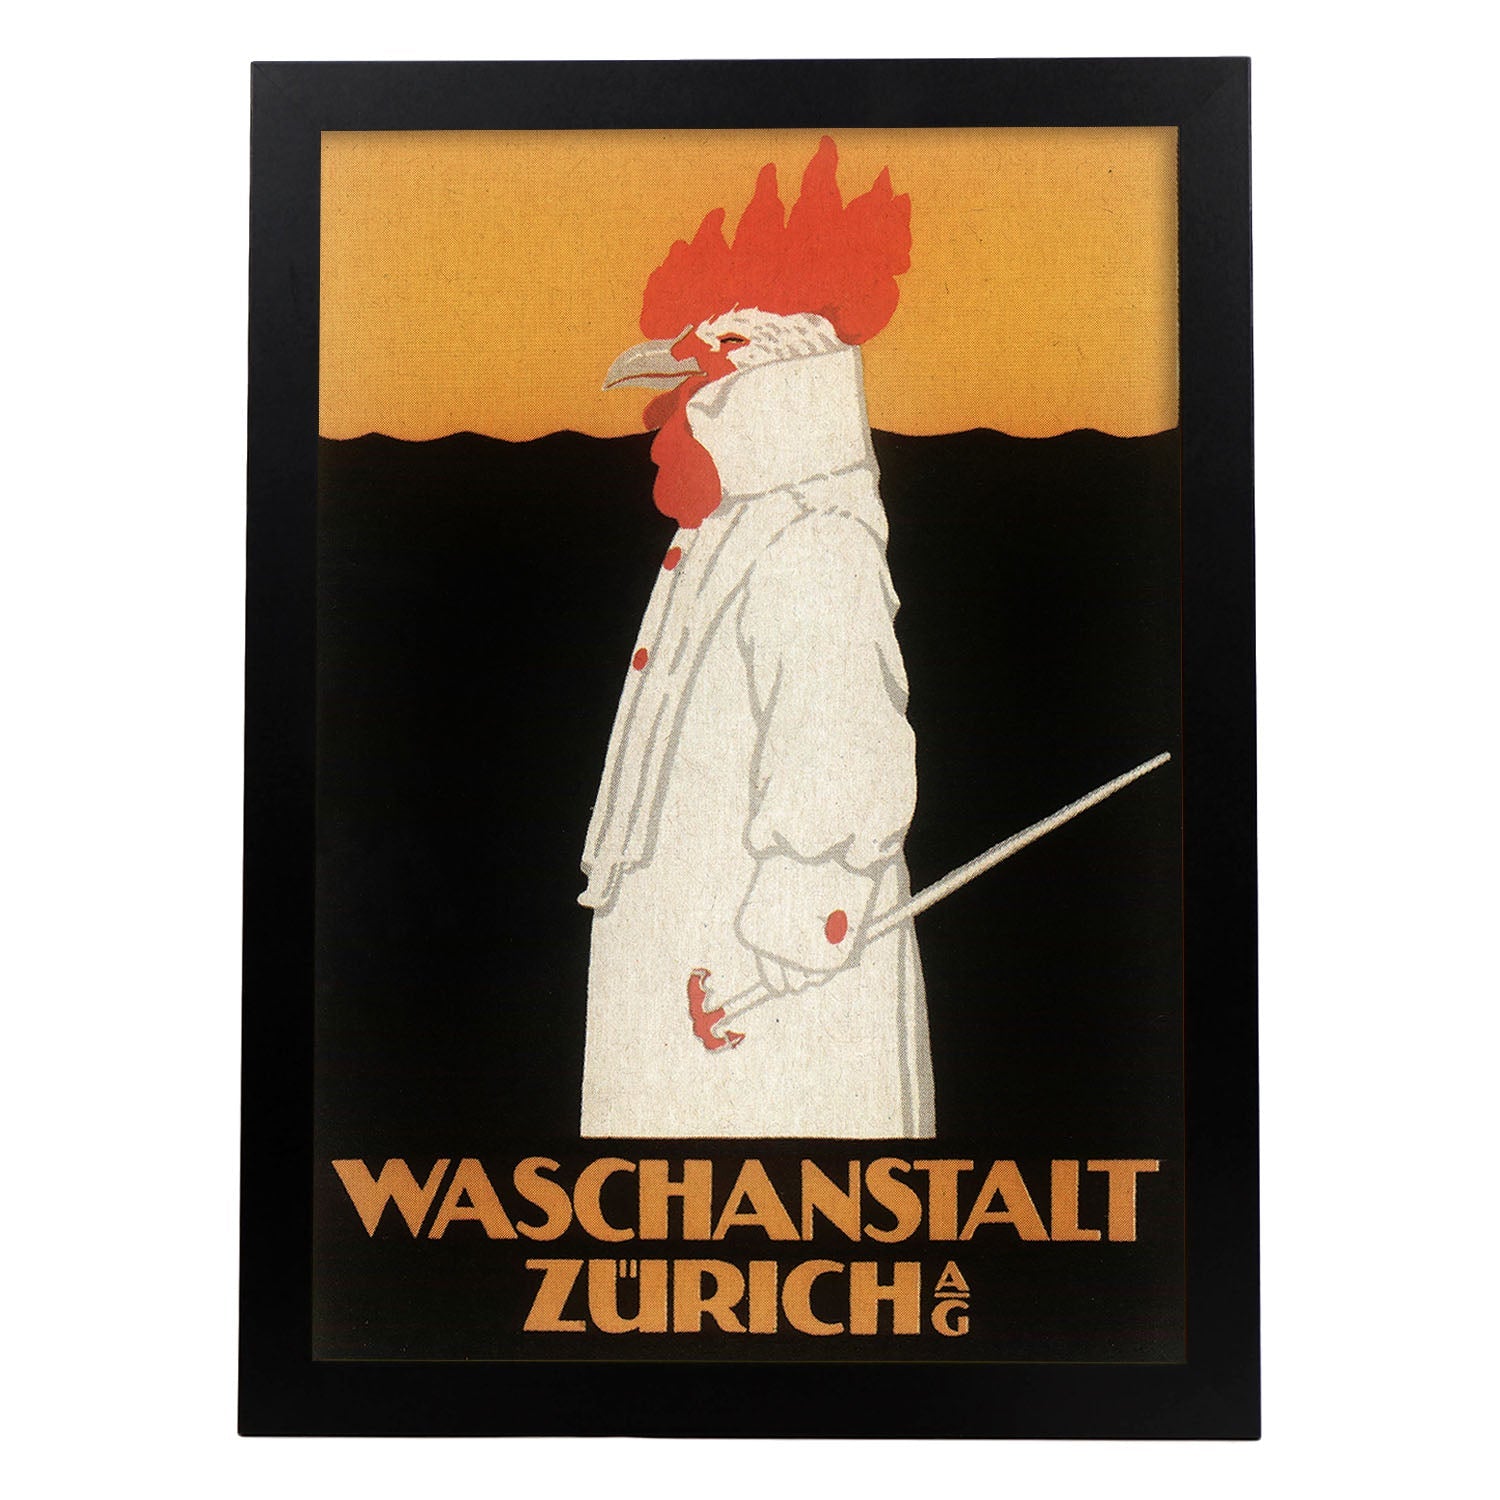 Poster vintage. Anuncio vintage Waschanstalt Zurich de 1905.-Artwork-Nacnic-A4-Marco Negro-Nacnic Estudio SL